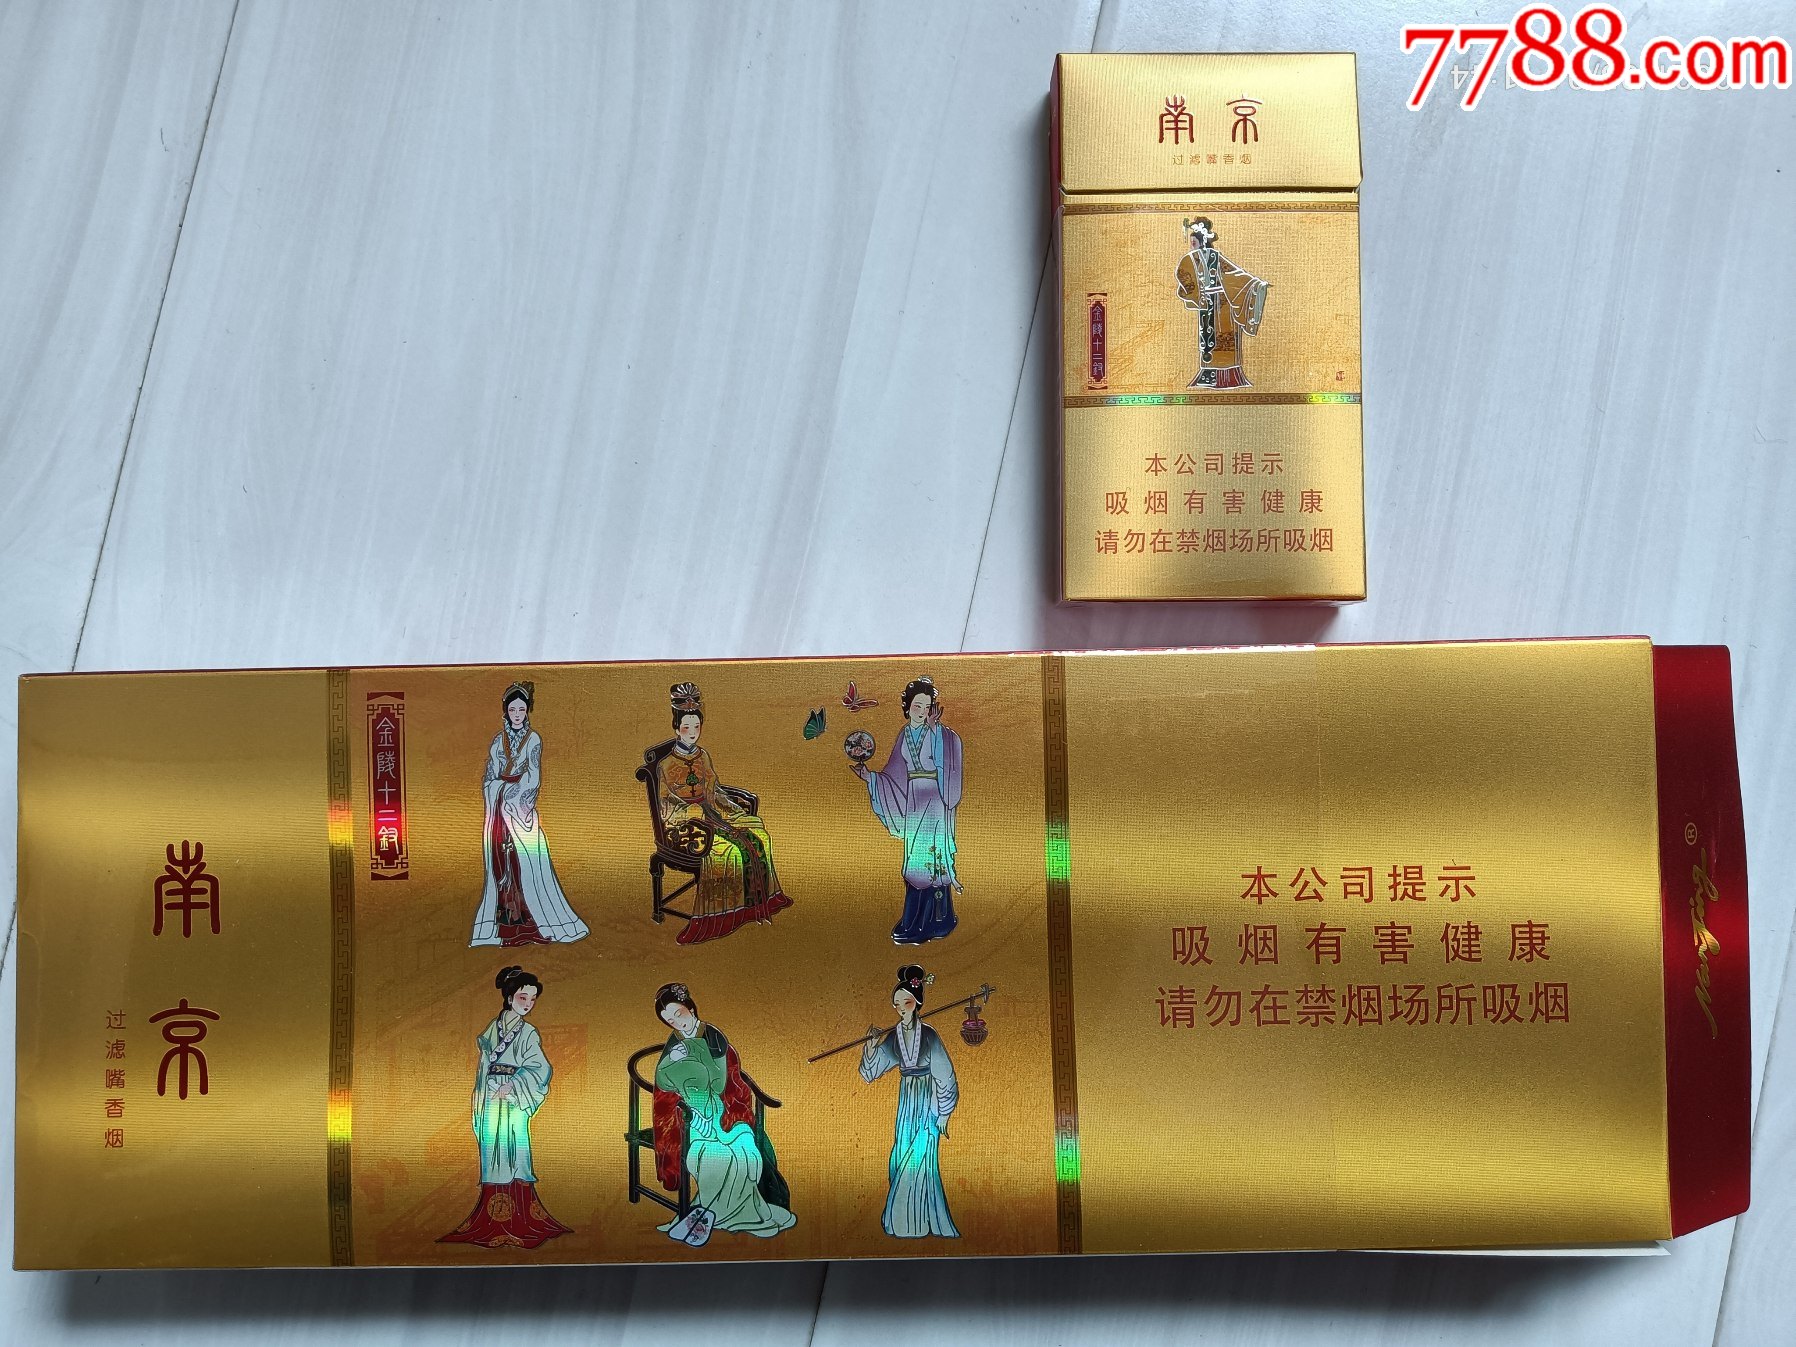 南京条盒标金陵十二钗烤烟型400江苏中烟工业有限责任公司含一枚元春